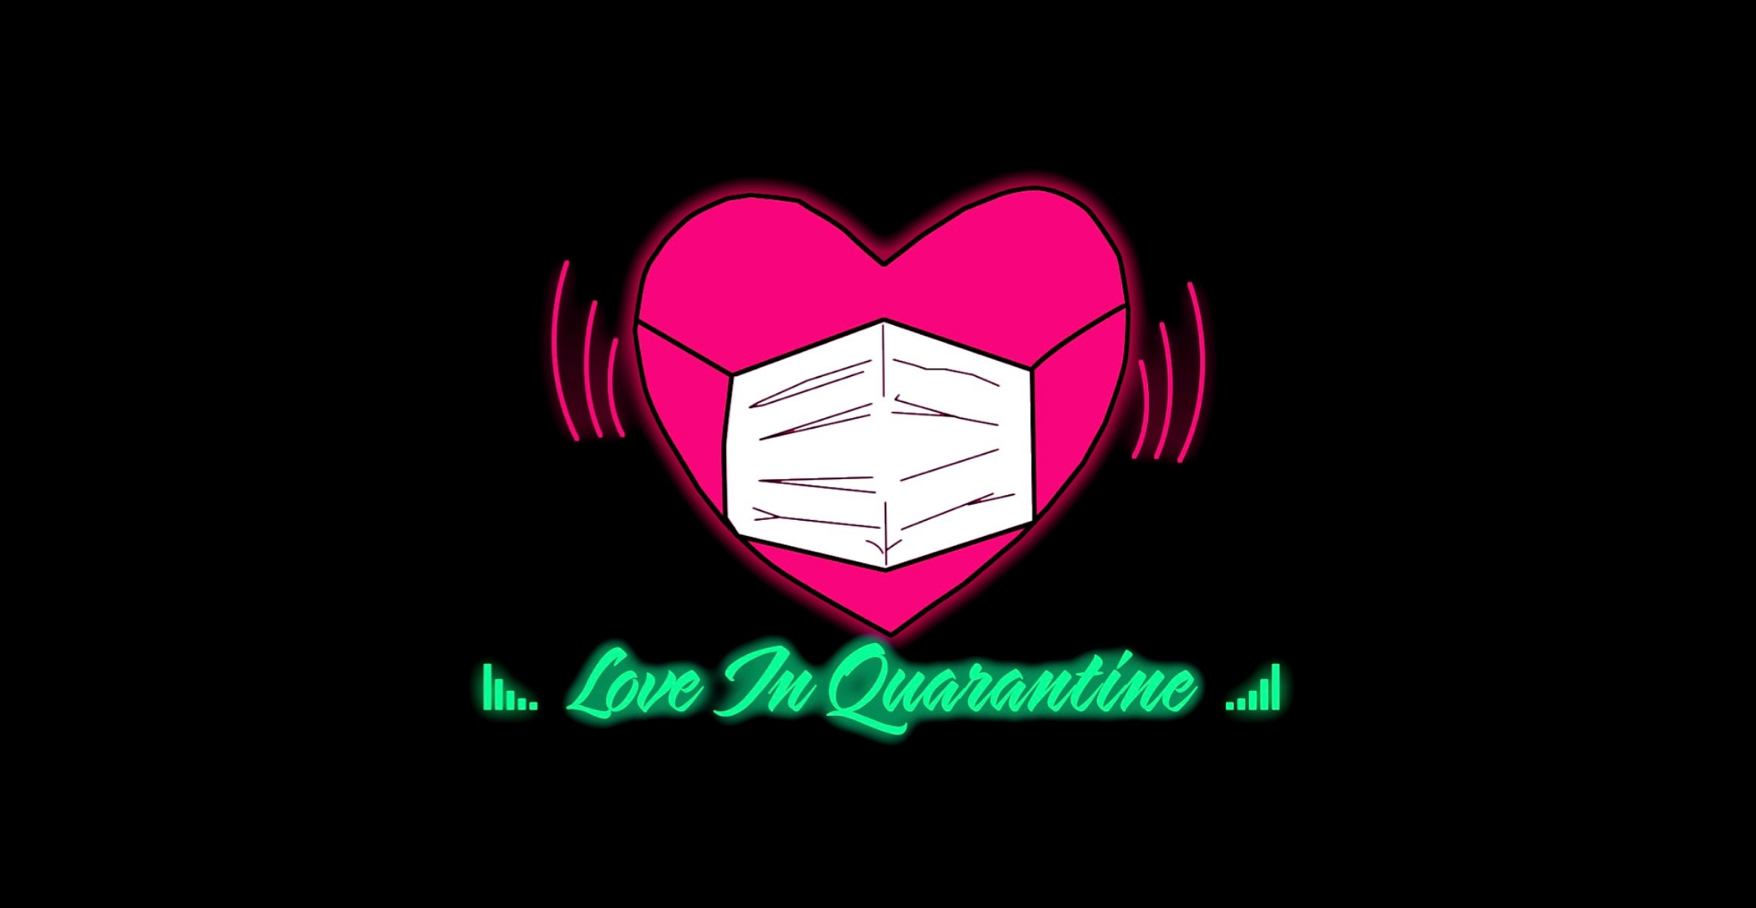 Love in quarantine